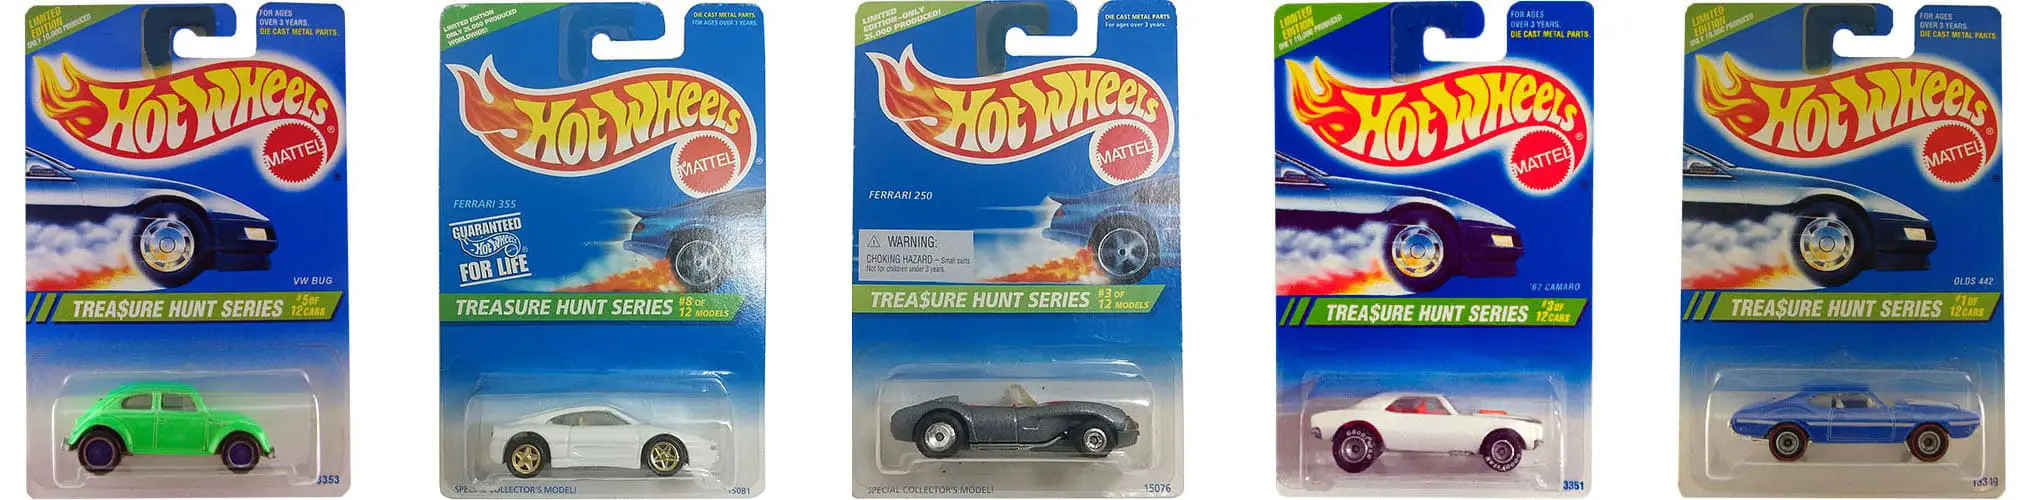 o que é hot wheels treasure hunt